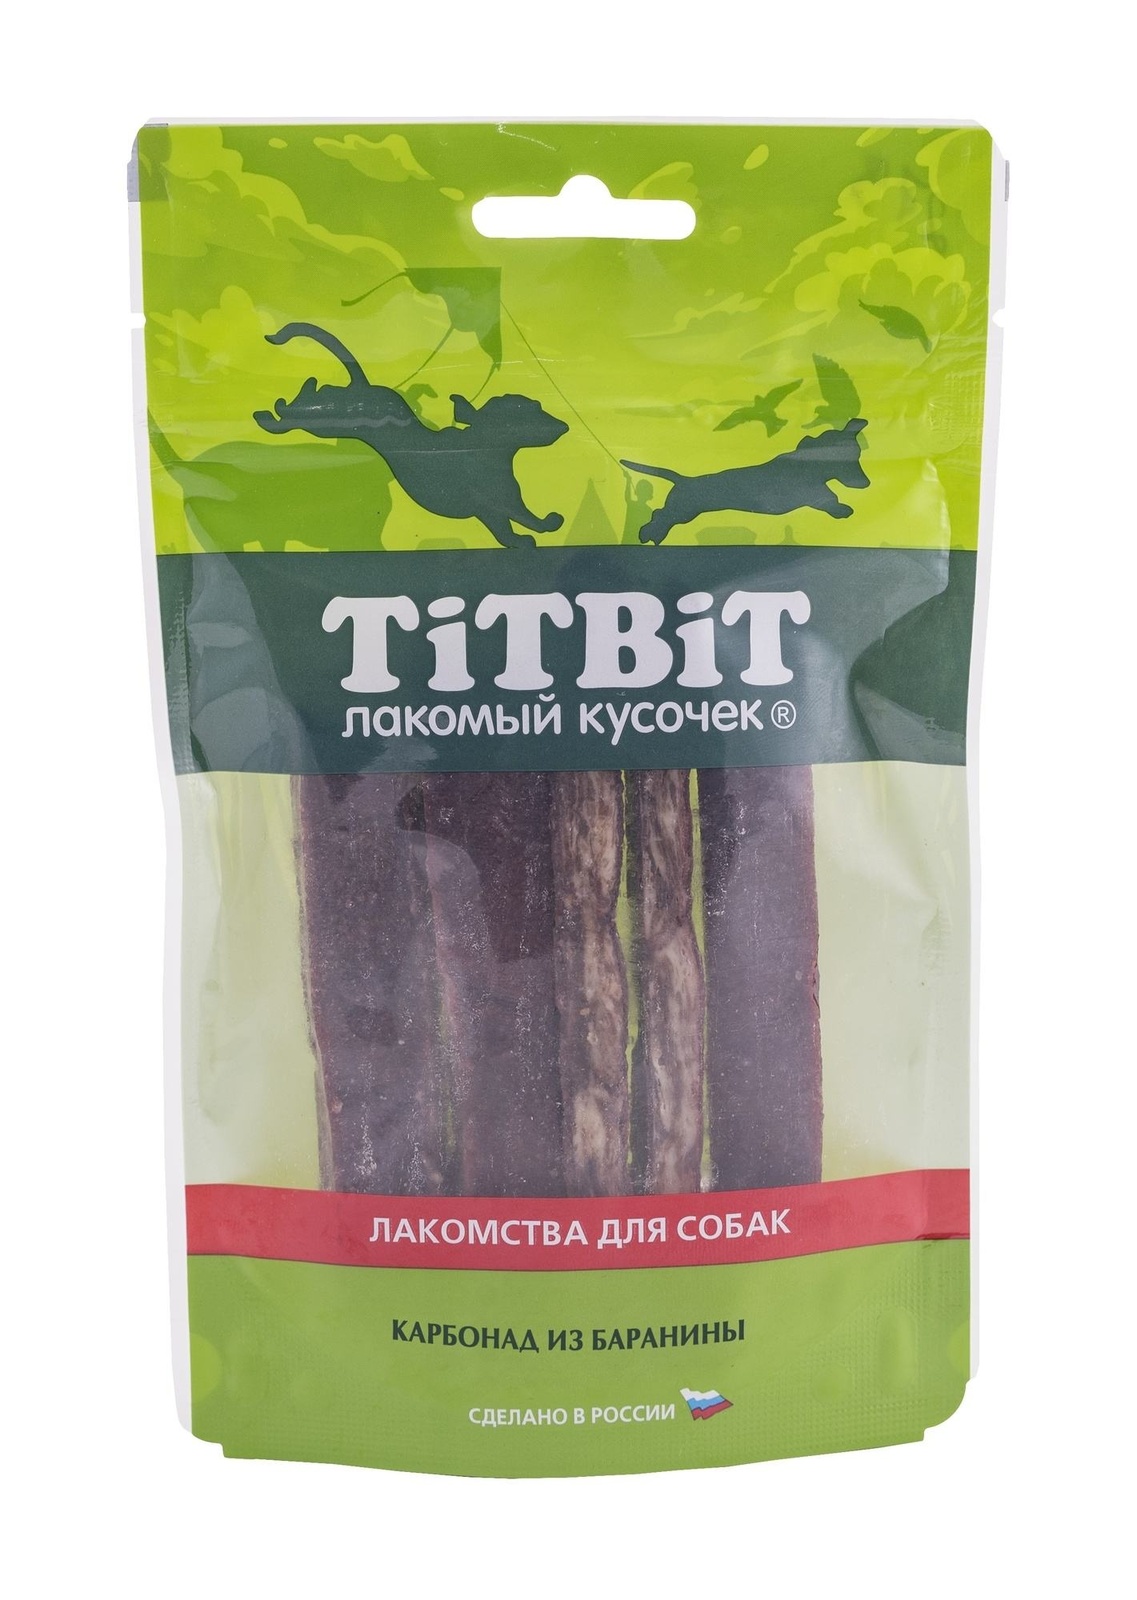 TiTBiT TiTBiT золотая коллекция Карбонад из баранины для собак (70 г) titbit titbit карбонад из баранины для собак золотая коллекция 70 г